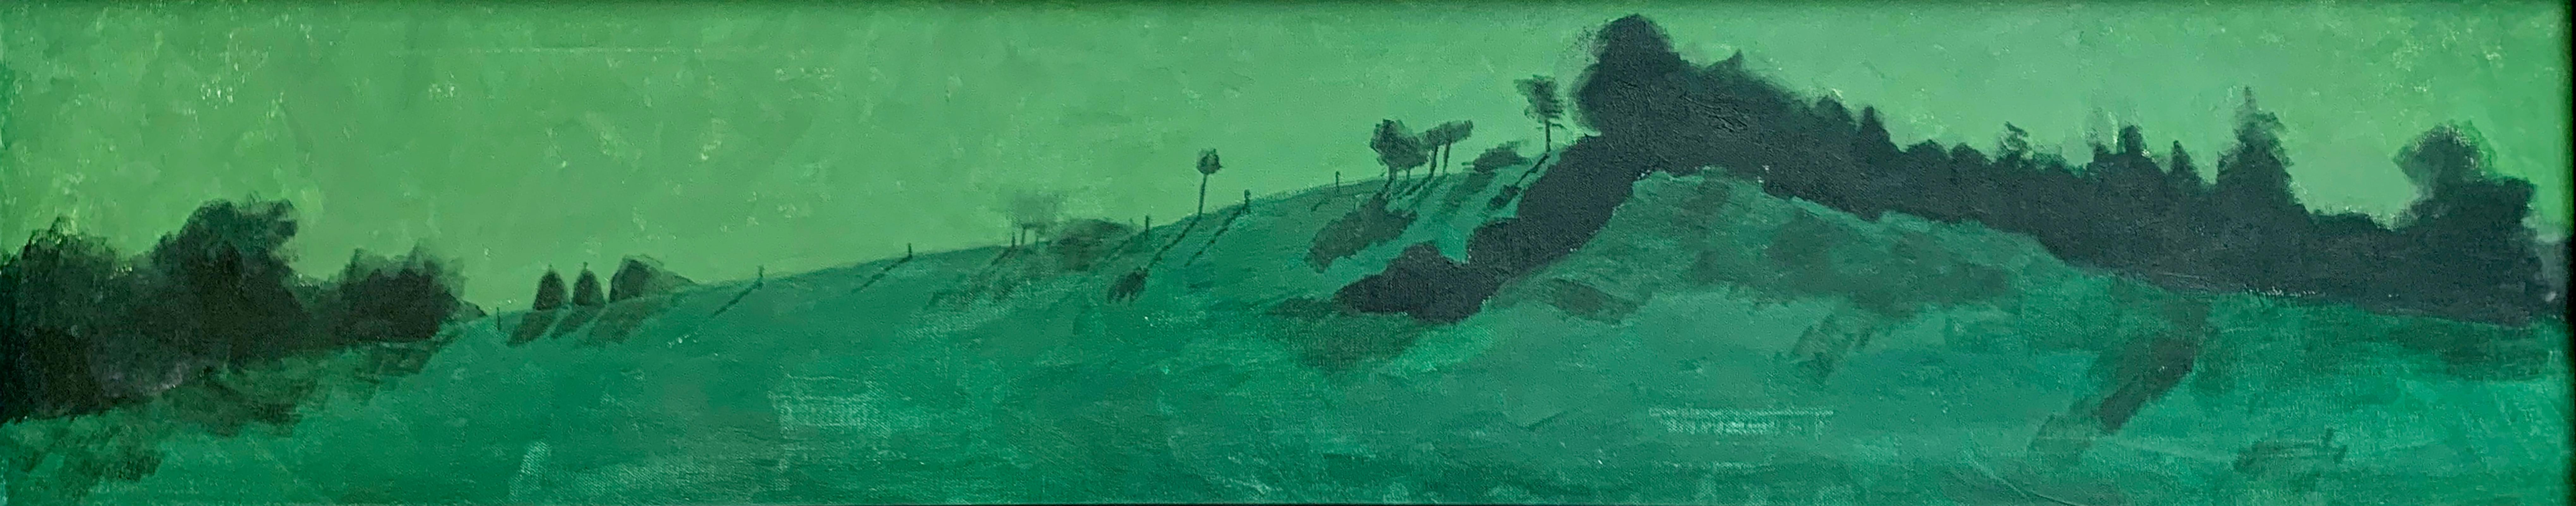 "Early Morning at Singeorz" du peintre roumain contemporain Marcel Lupse est une huile sur toile encadrée représentant un paysage tranquille de Transylvanie aux premières heures du matin. Ce tableau est l'un des quatre d'une série représentant le